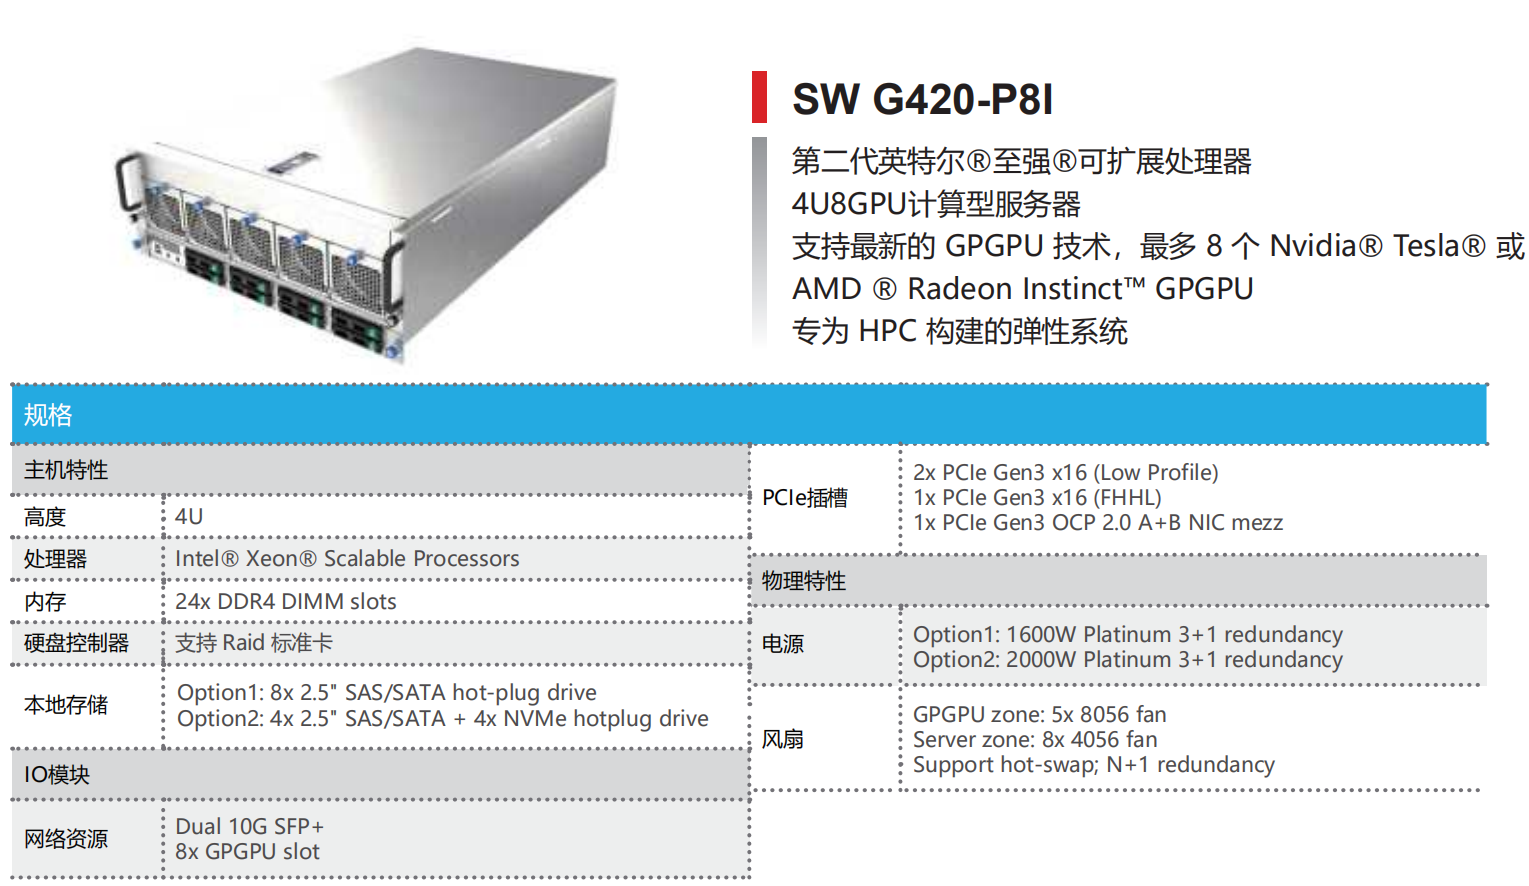 INTEL 平台 AI 服务器—SW G420-P8I(图1)